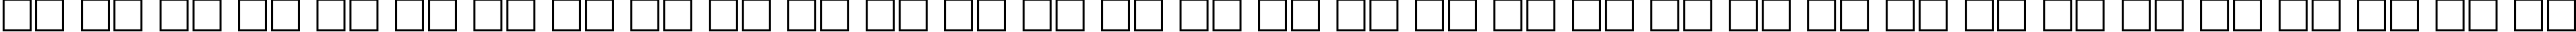 Пример написания русского алфавита шрифтом Calligraphic Regular